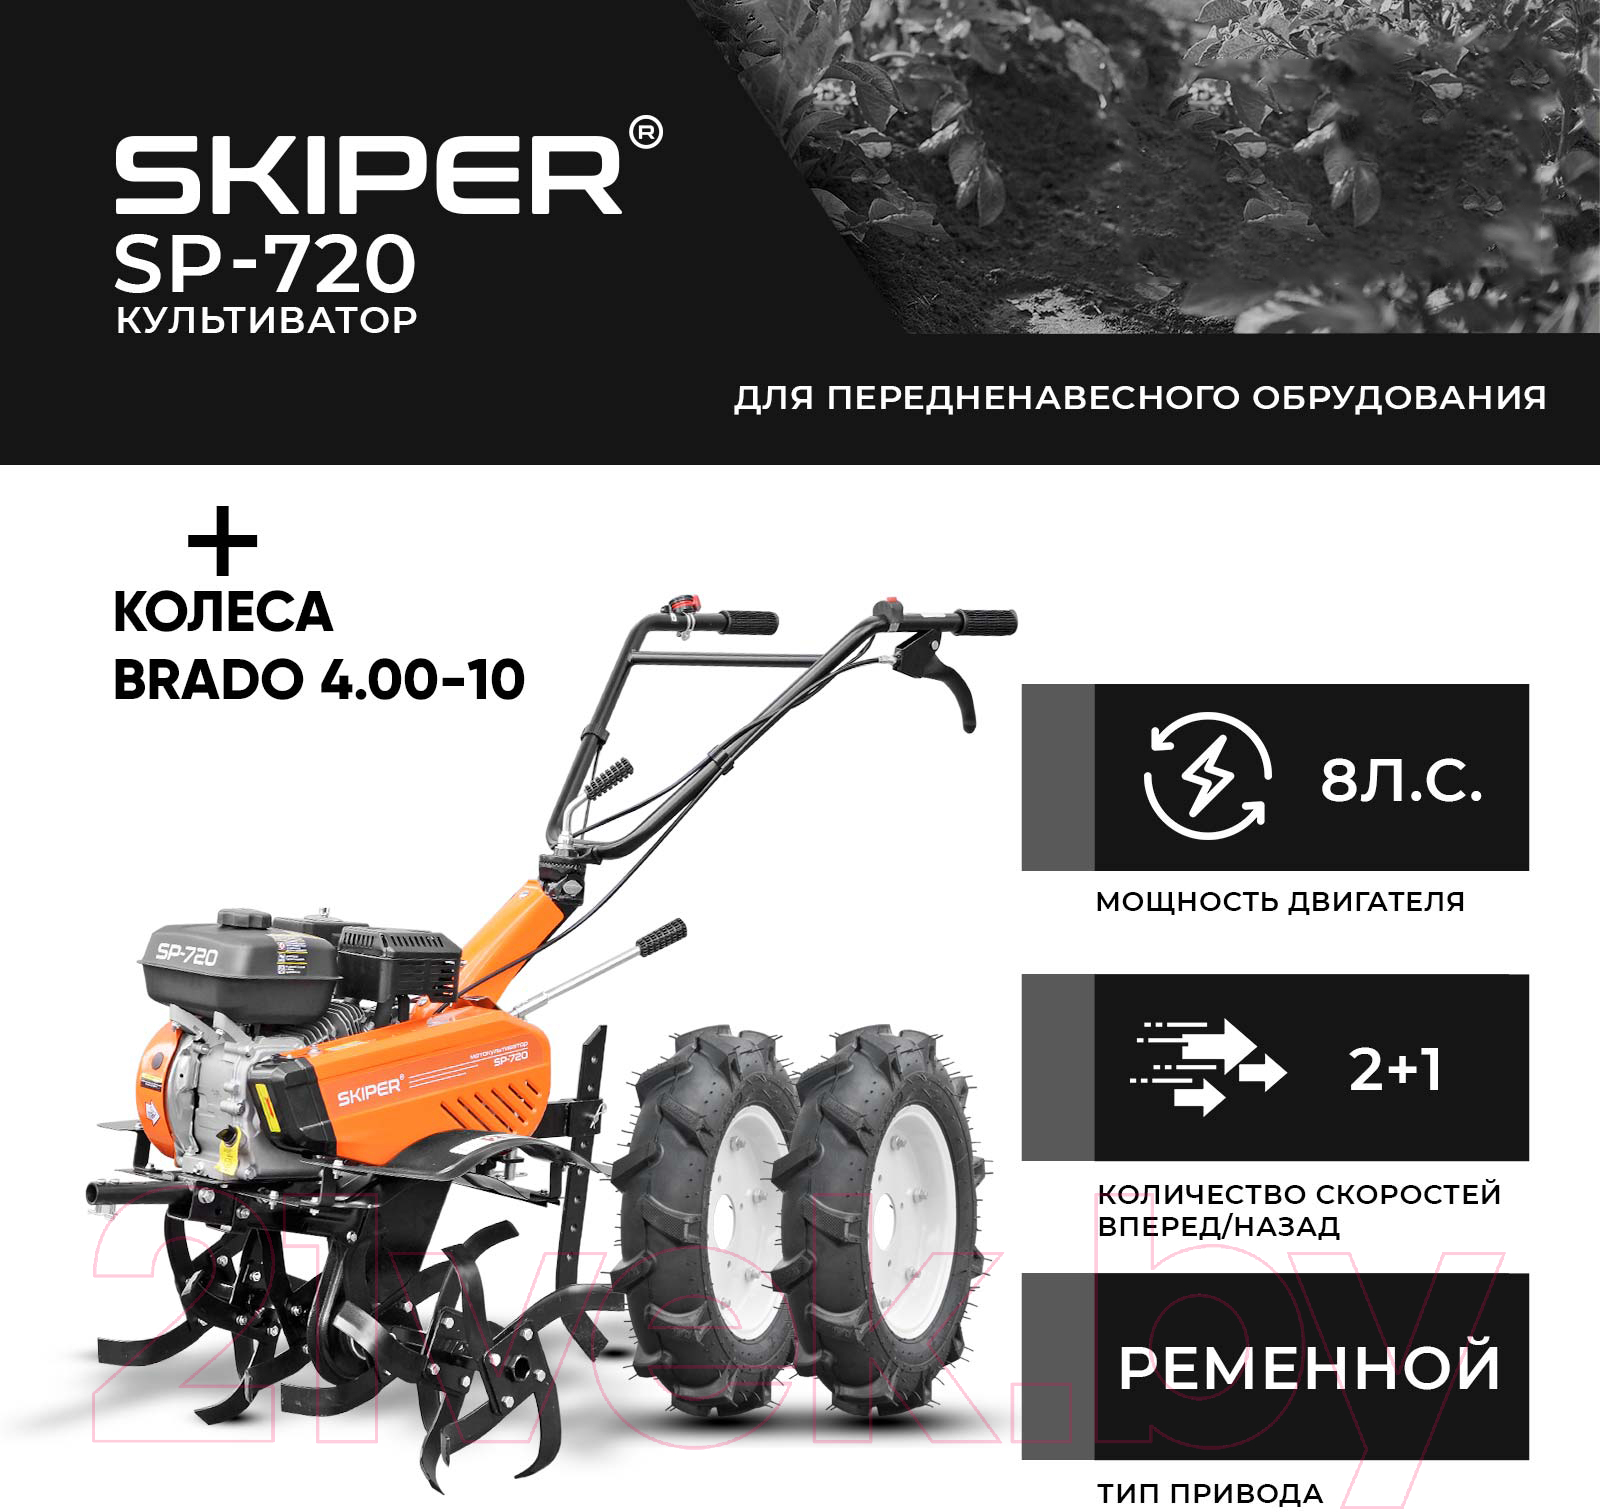 Мотокультиватор Skiper SP-720 + колеса Brado 4.00-10